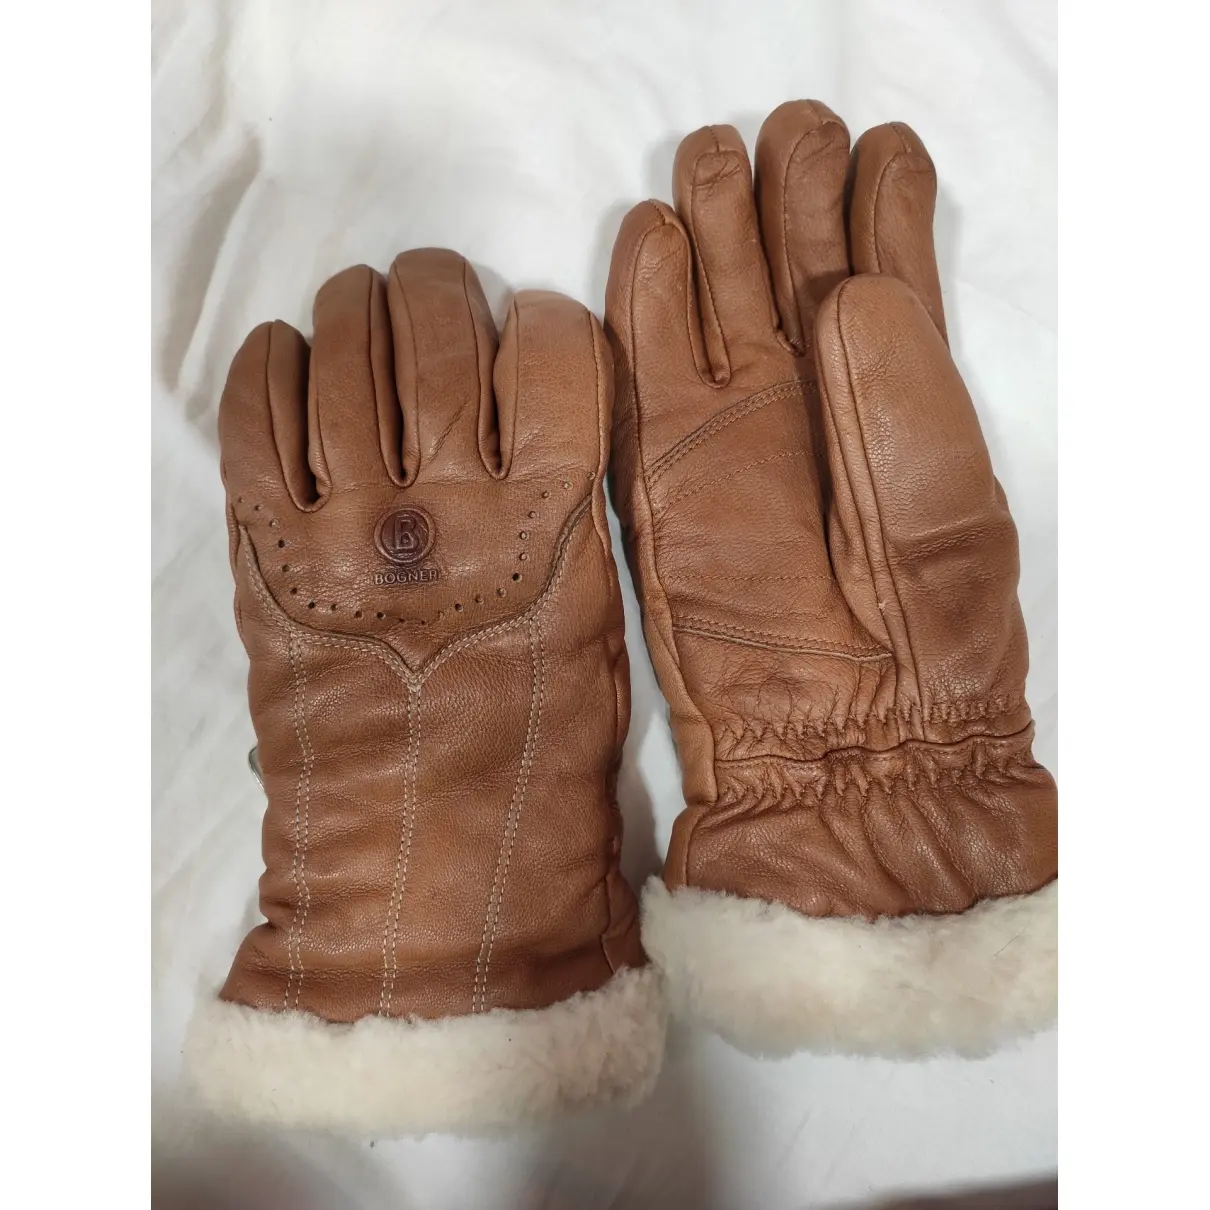 Bogner Leather gloves for sale